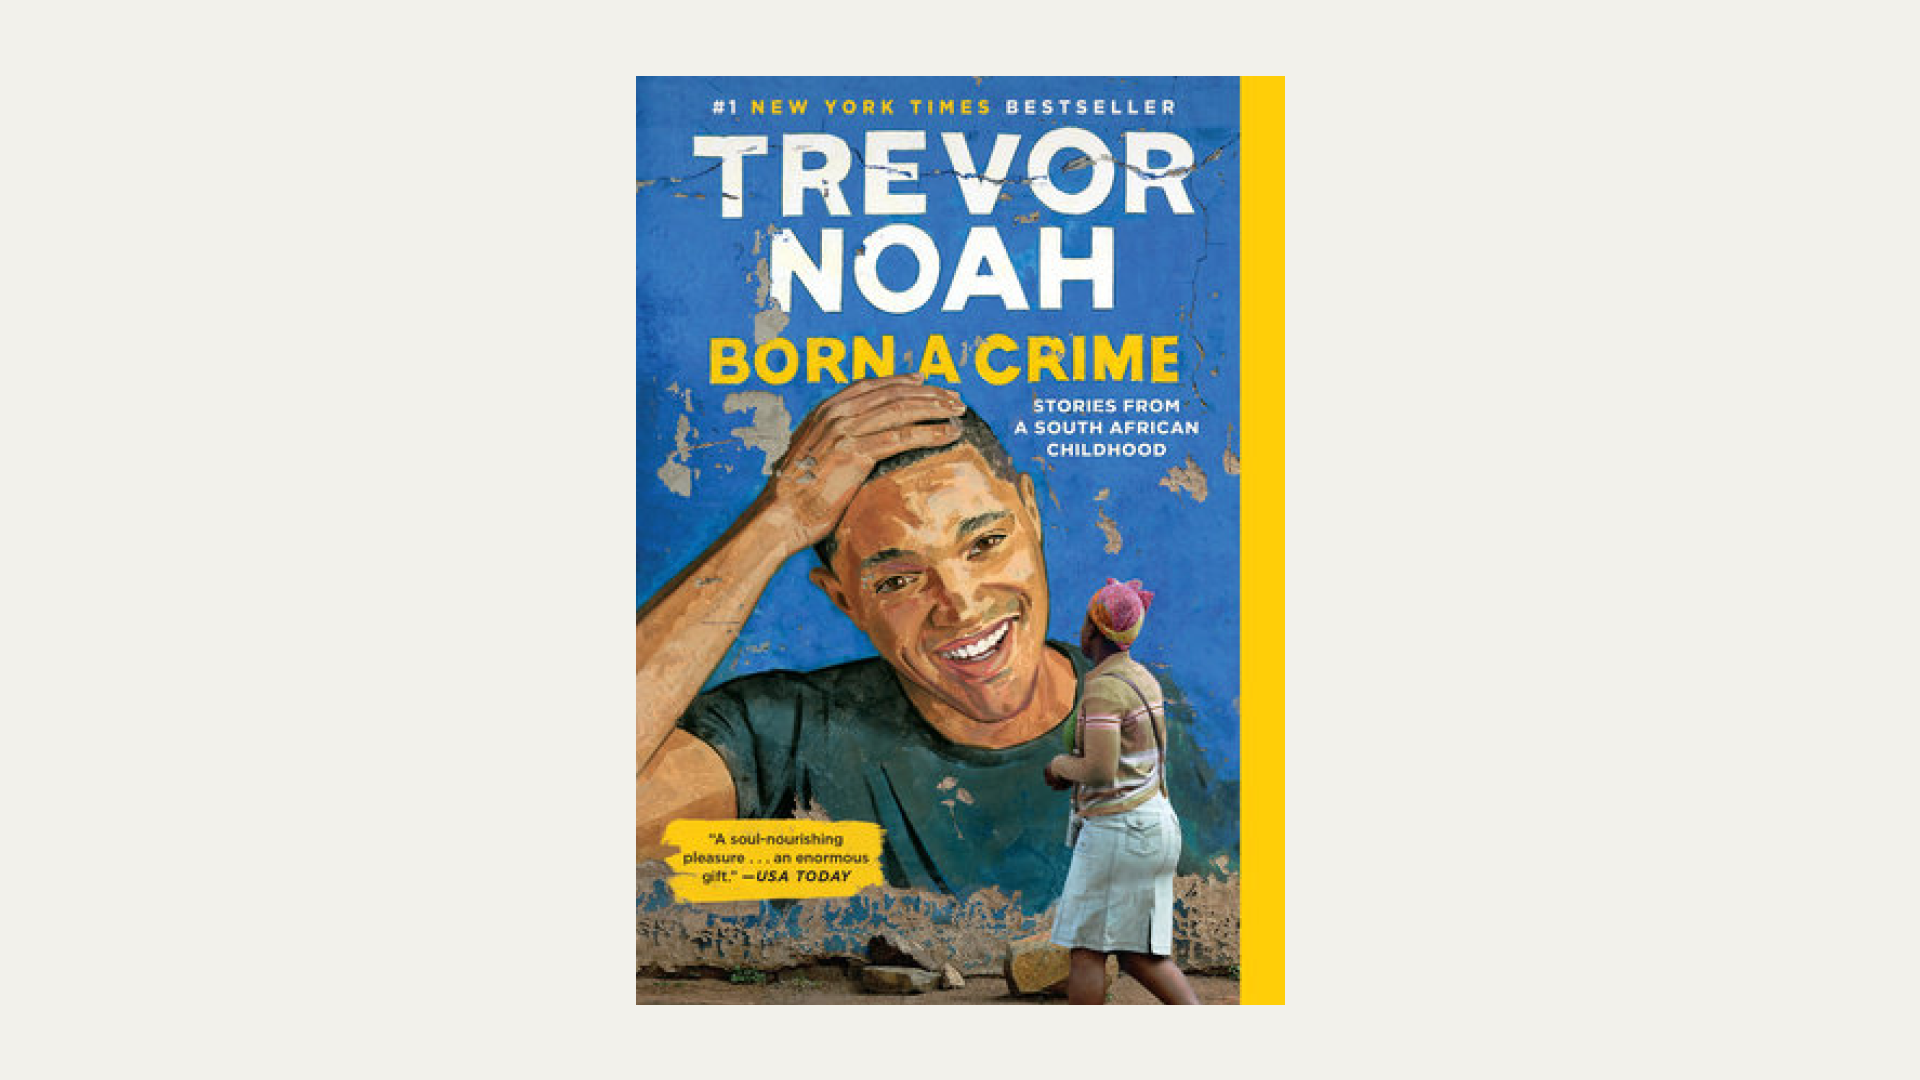 “Born a Crime” by Trevor Noah